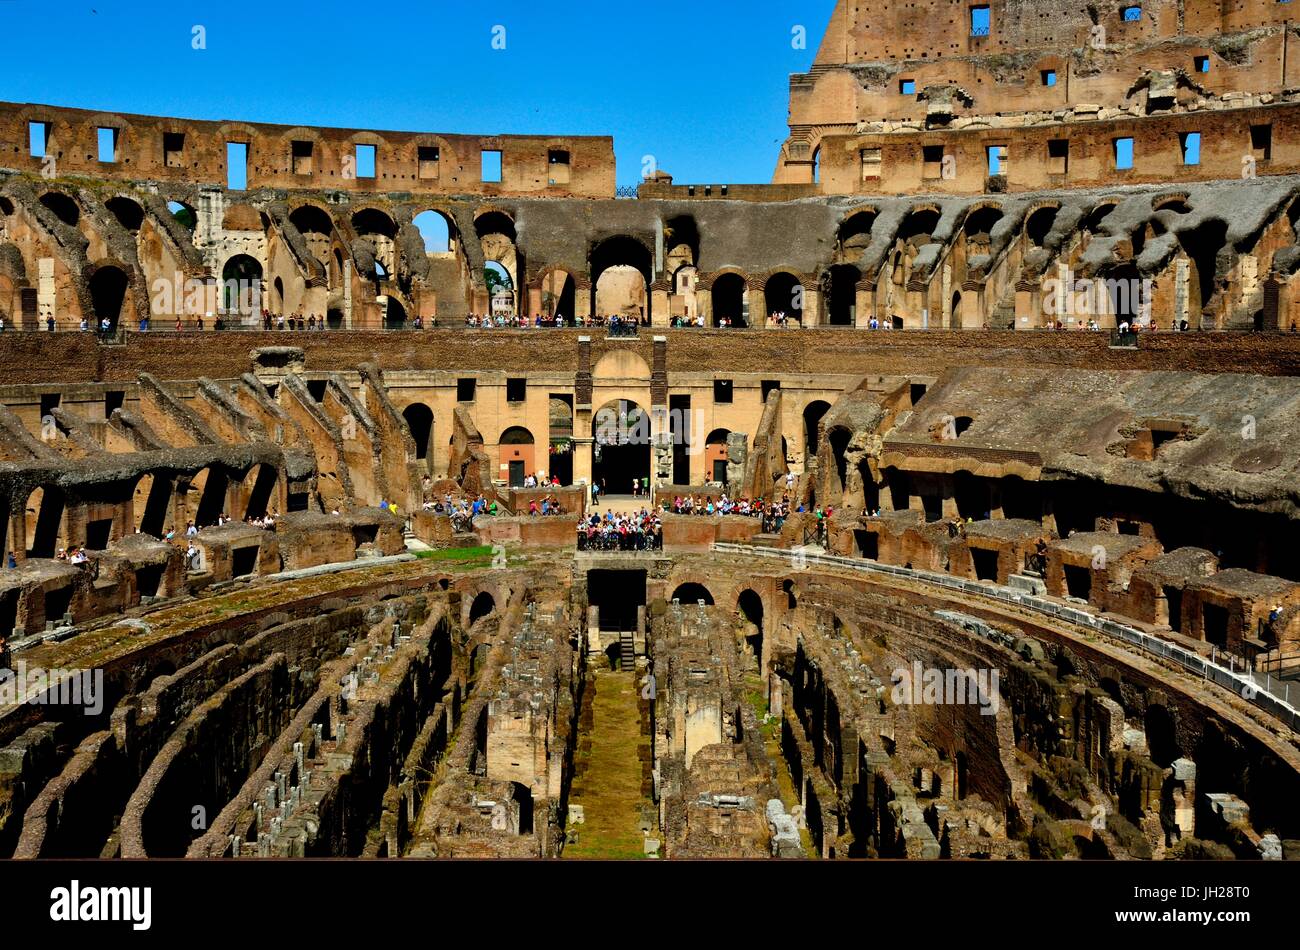 Vue partielle de l'intérieur du Colisée. C'est un amphithéâtre ovale, Rome, Italie.construits en béton et le sable c'est le plus grand amphithéâtre romain jamais construit. Banque D'Images